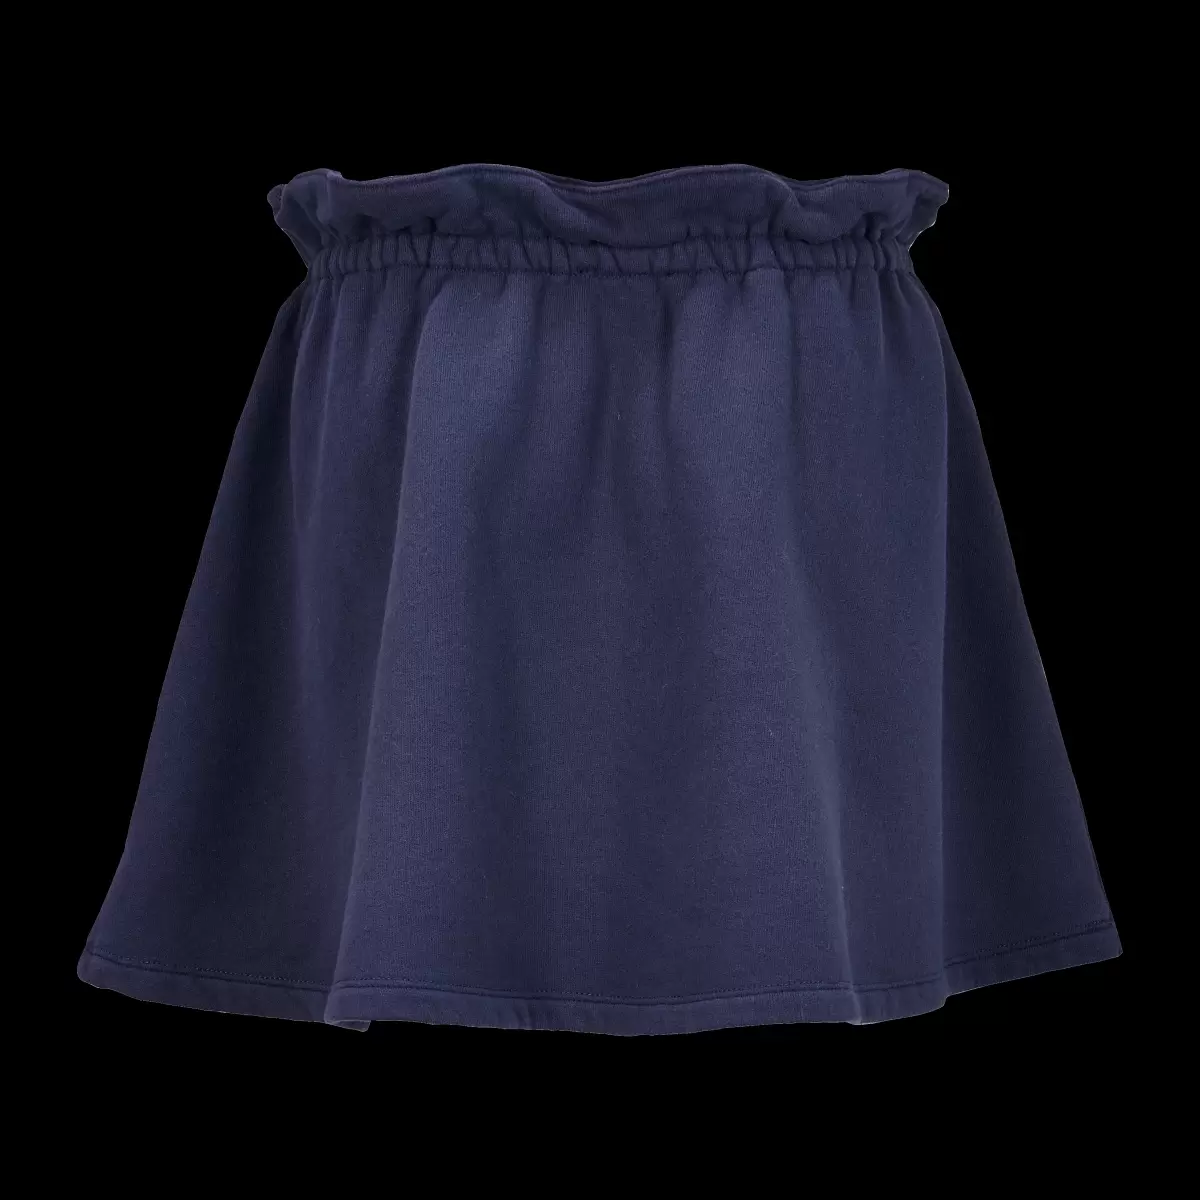 Marineblau / Blau Konsumgut Solid Rock Aus Baumwolle Für Mädchen Vilebrequin Röcke Mädchen - 3